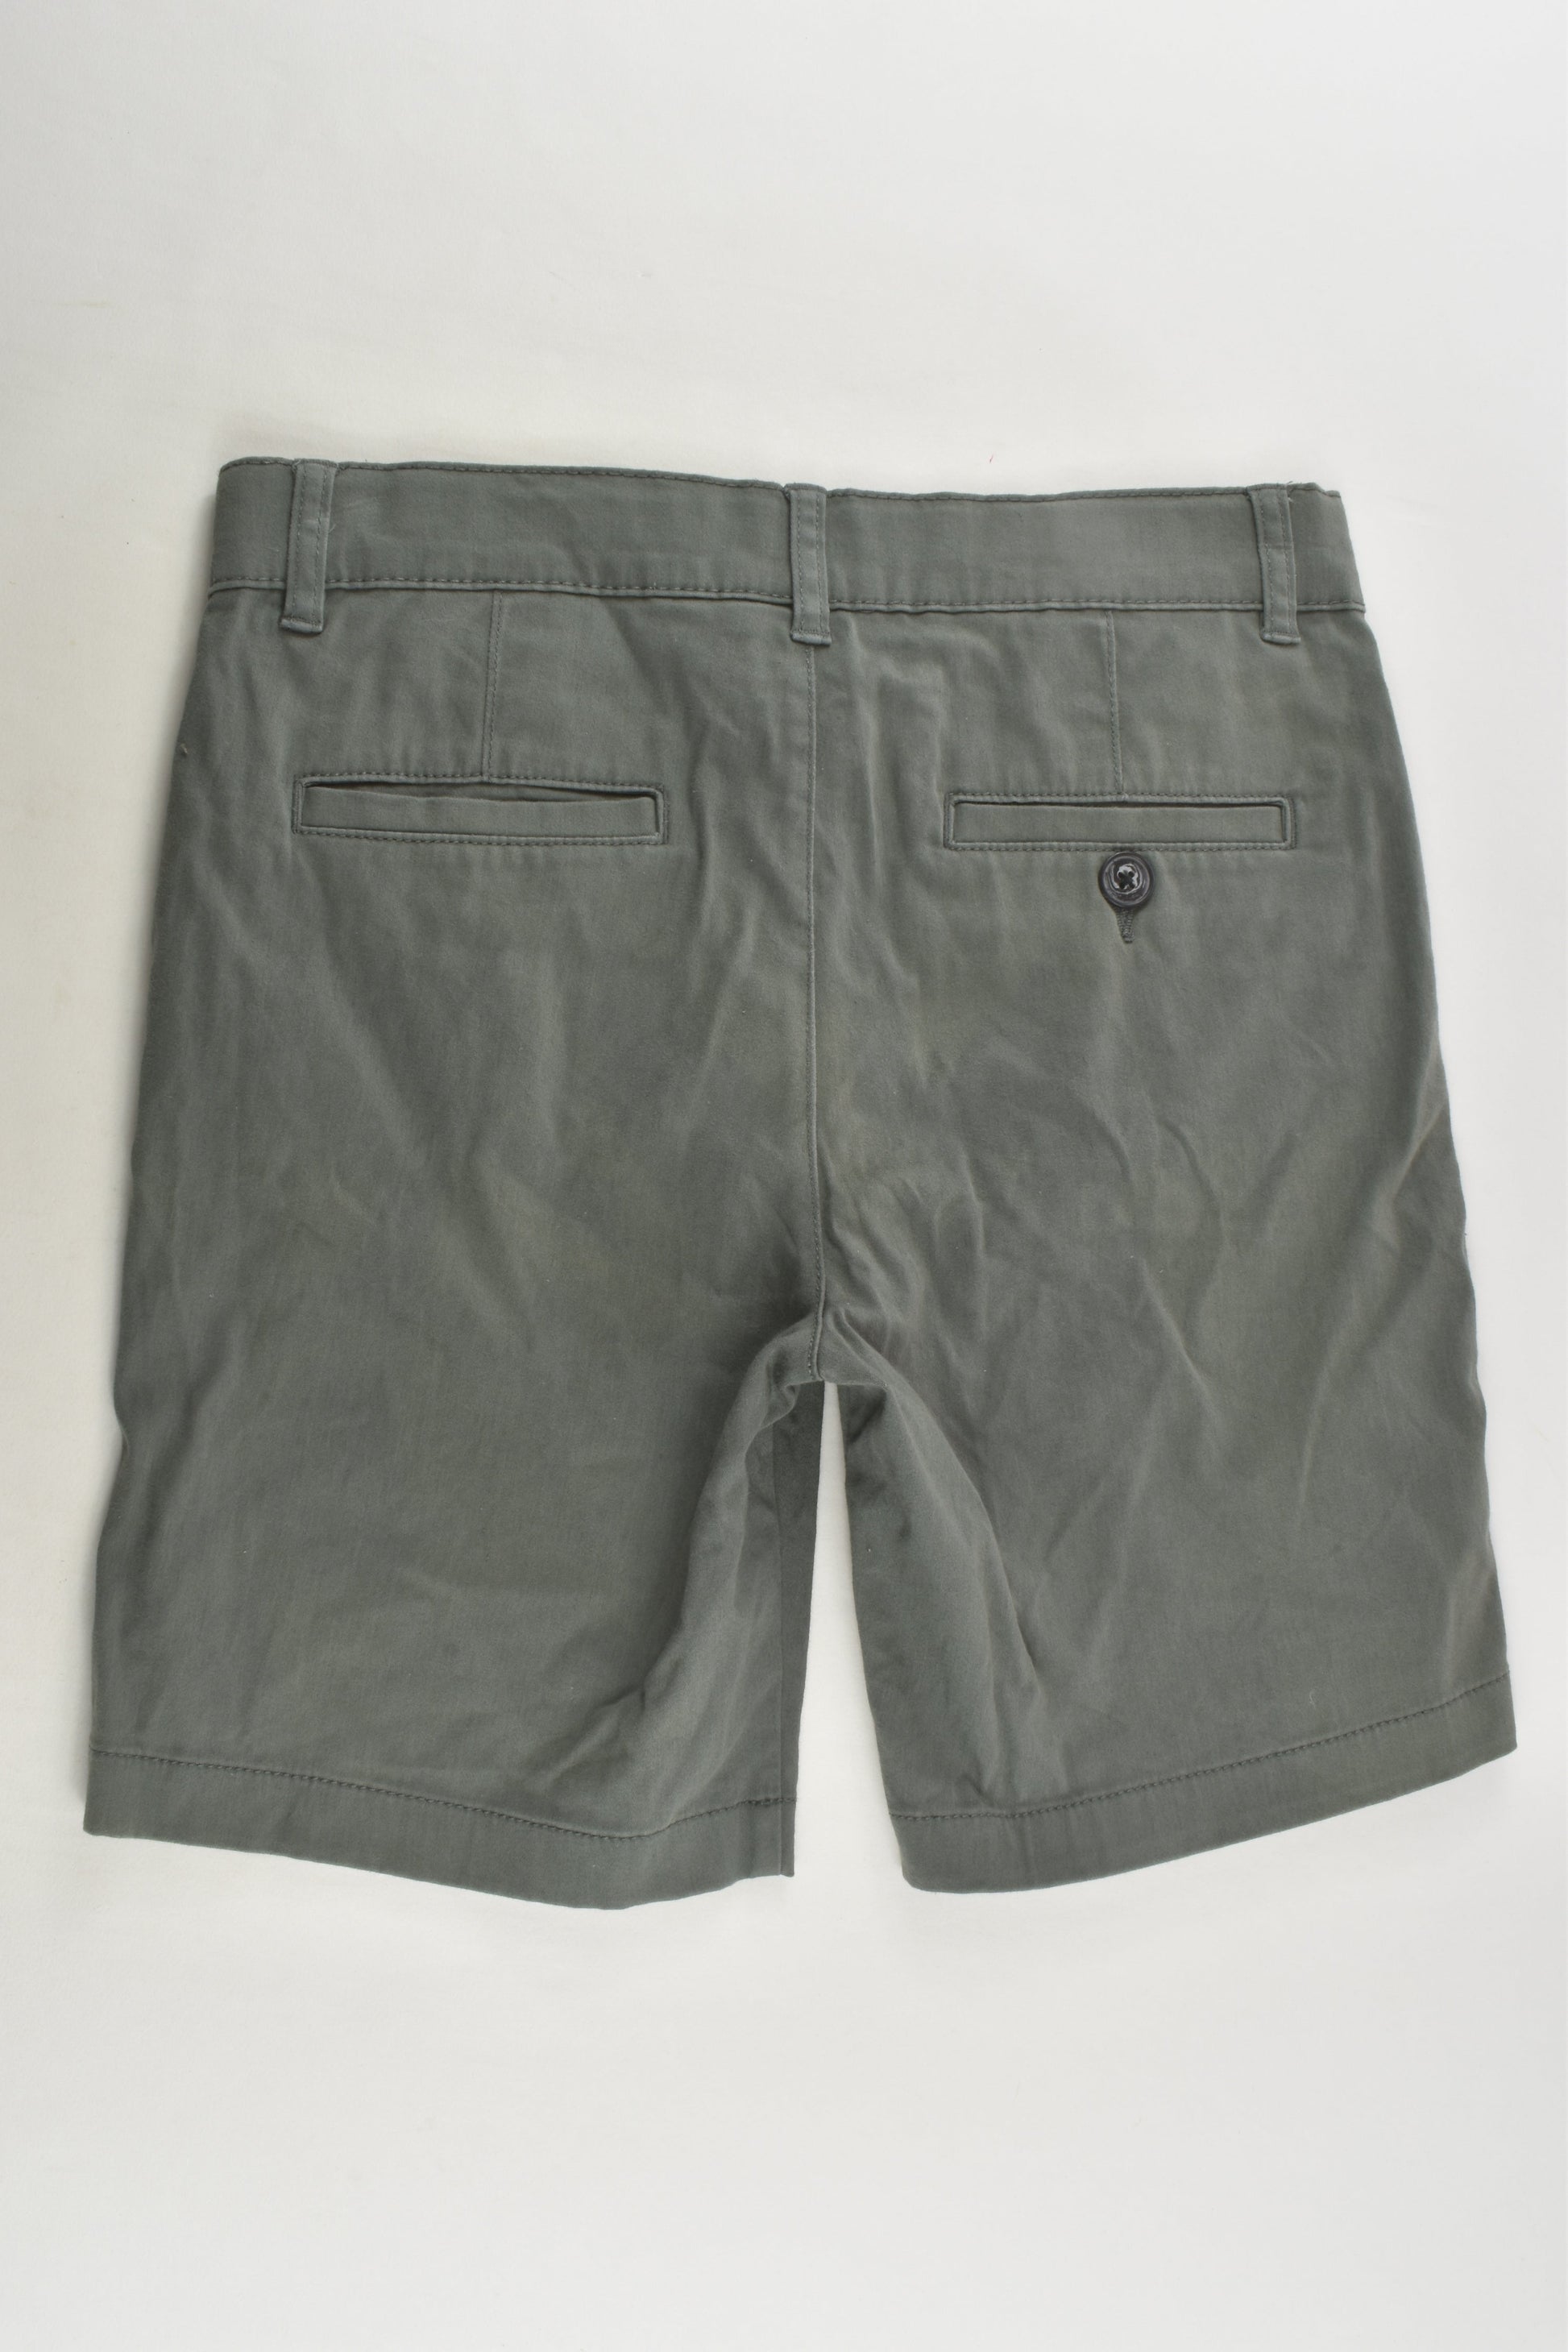 Bauhaus Size 12 Shorts